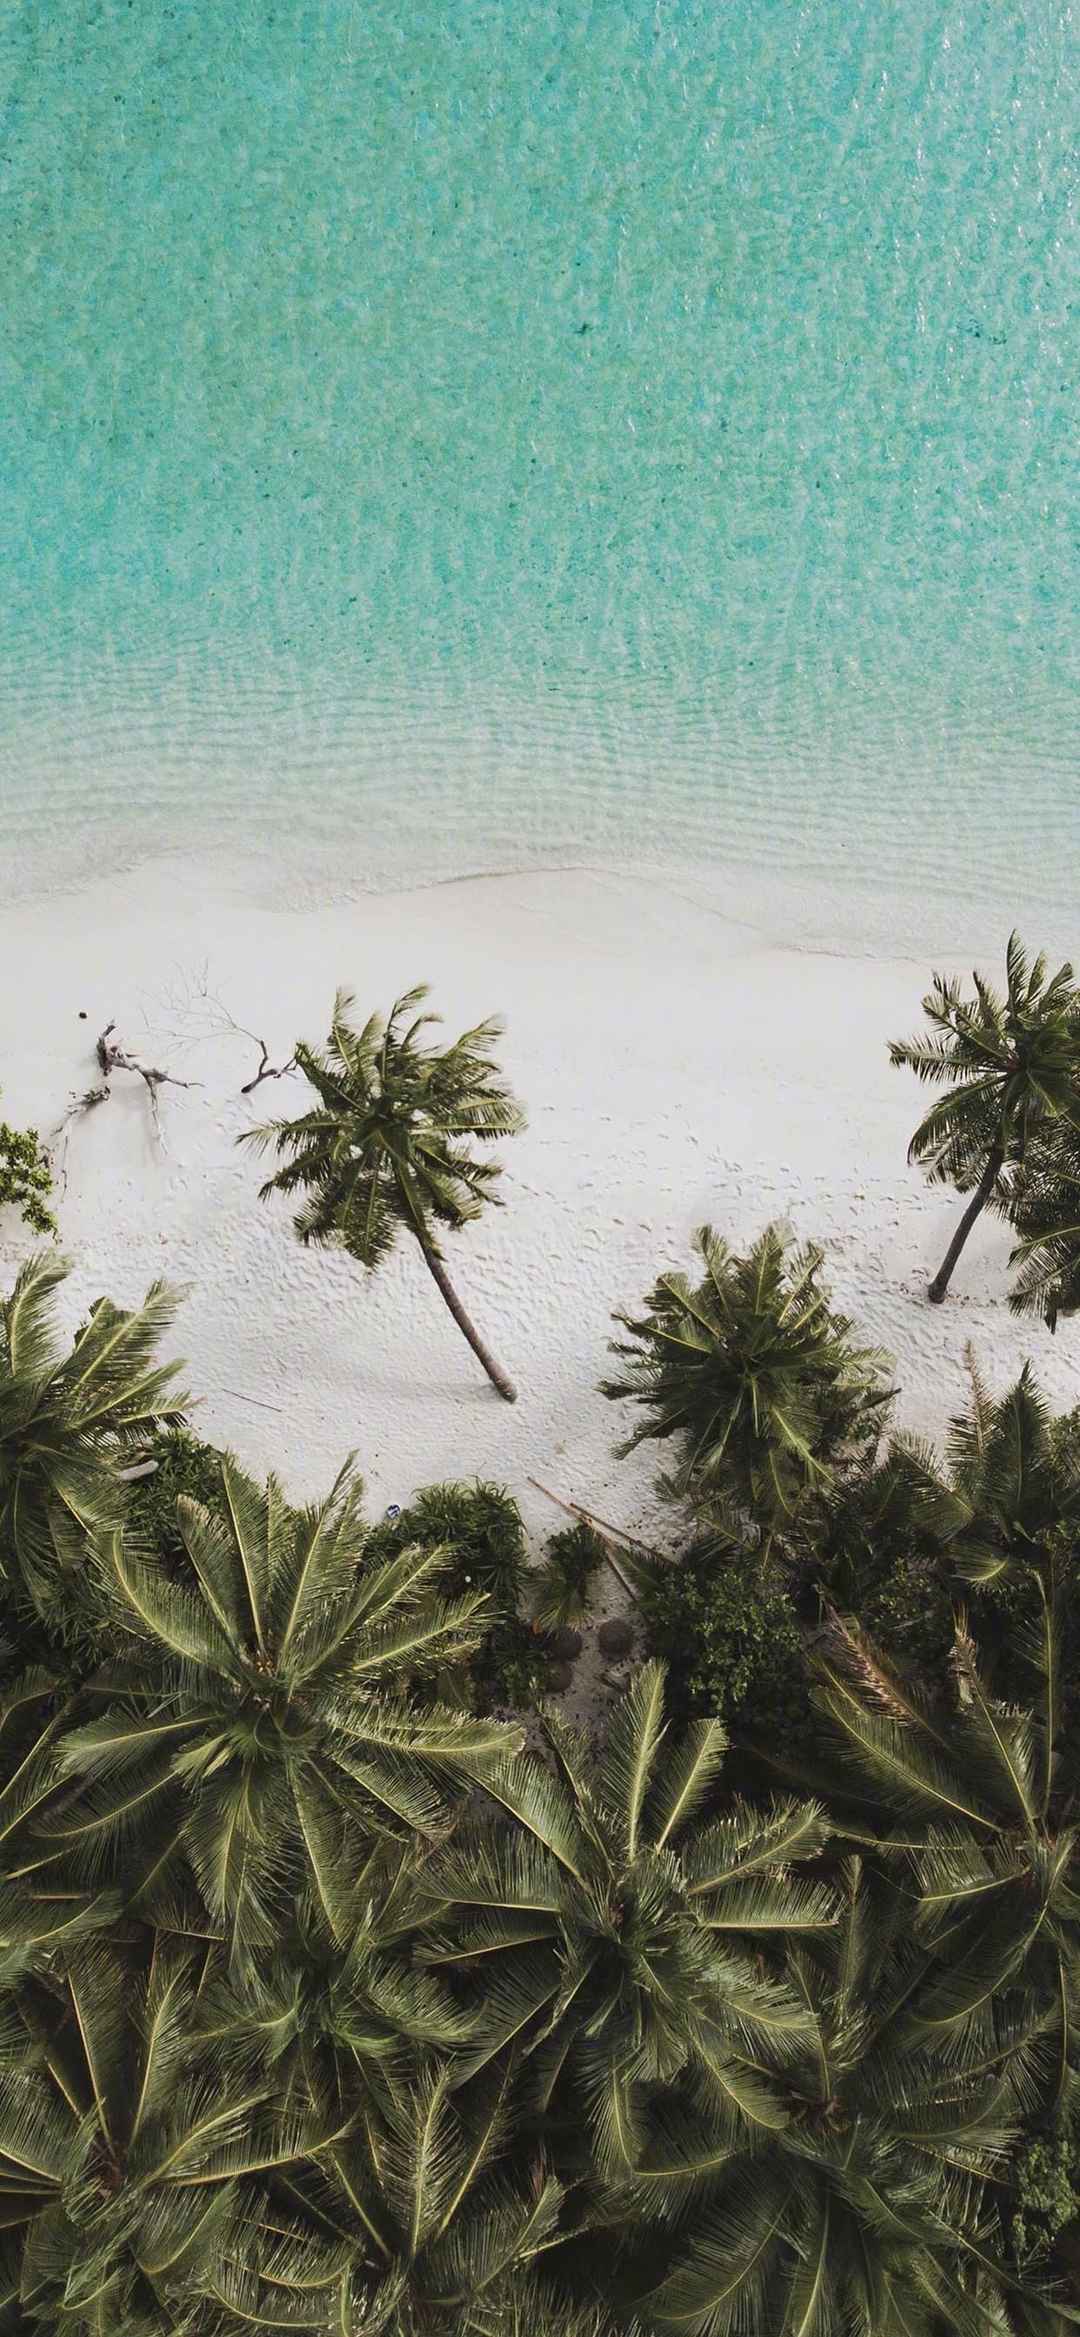 大海沙滩自然风景手机壁纸